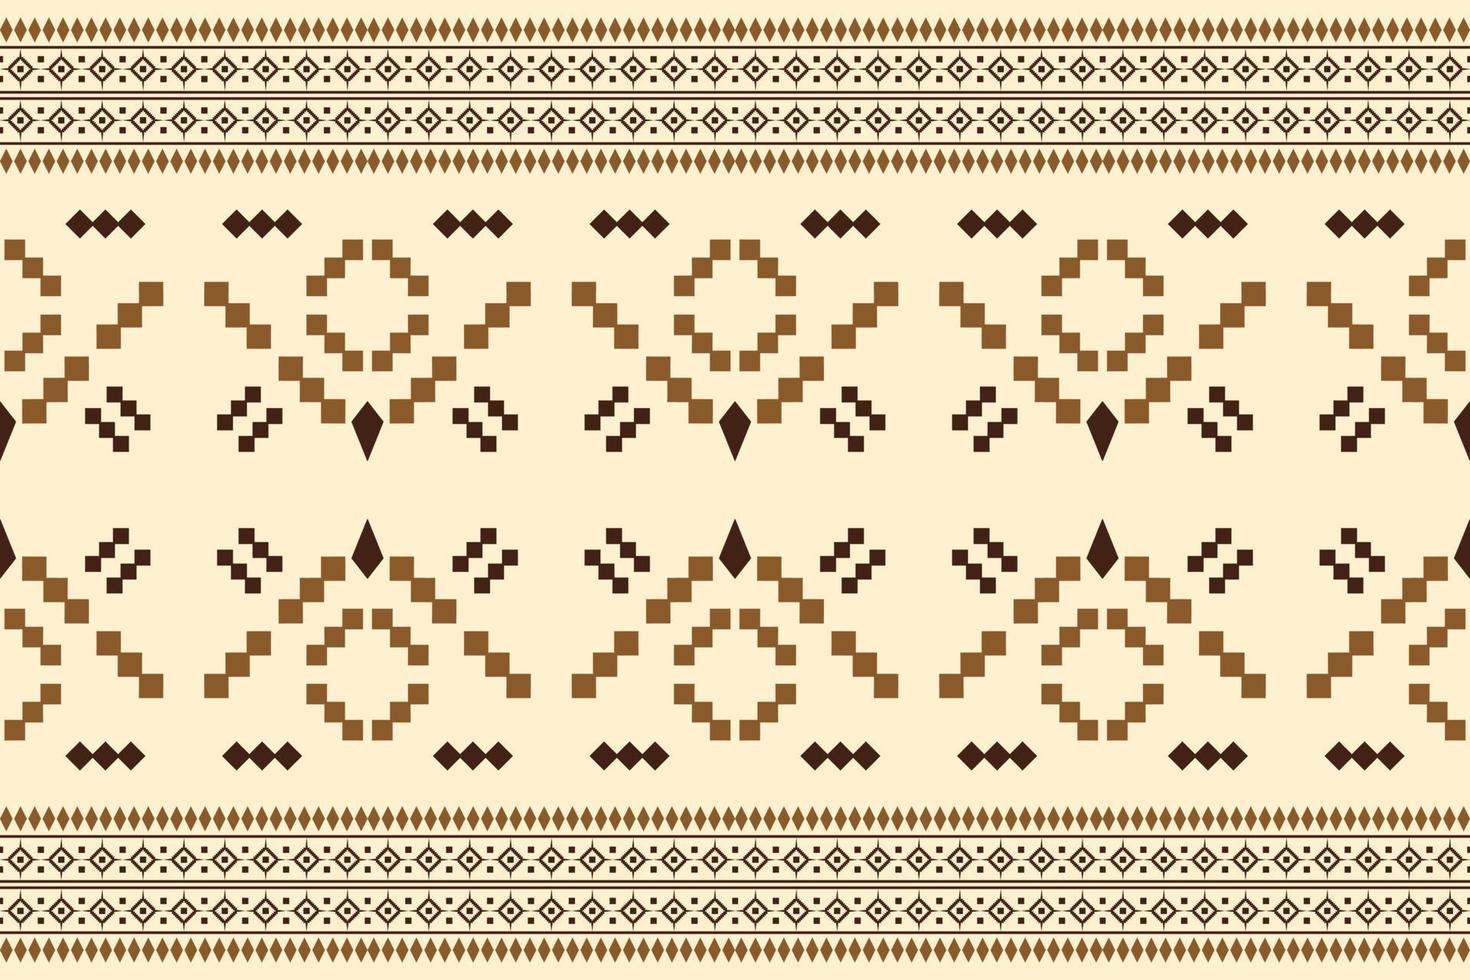 patrón de tejido étnico estilo geométrico. sarong azteca étnico oriental patrón tradicional fondo naranja. resumen, vector, ilustración. uso para textura, ropa, envoltura, decoración, alfombra. vector